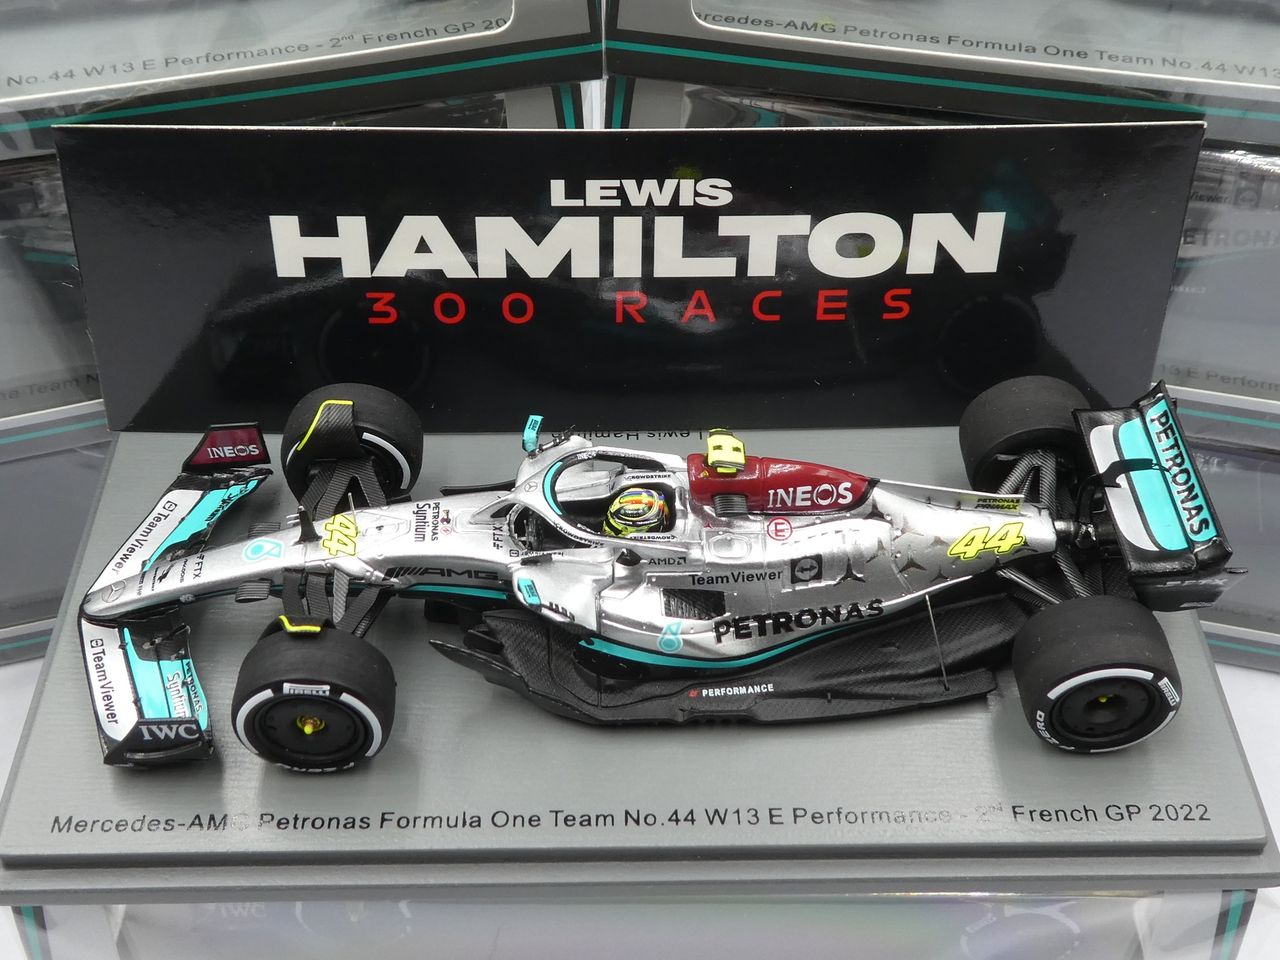 Mercedes - AMG F1 W13E n.44 (2022) 1:43 - 2nd France GP - Lewis 